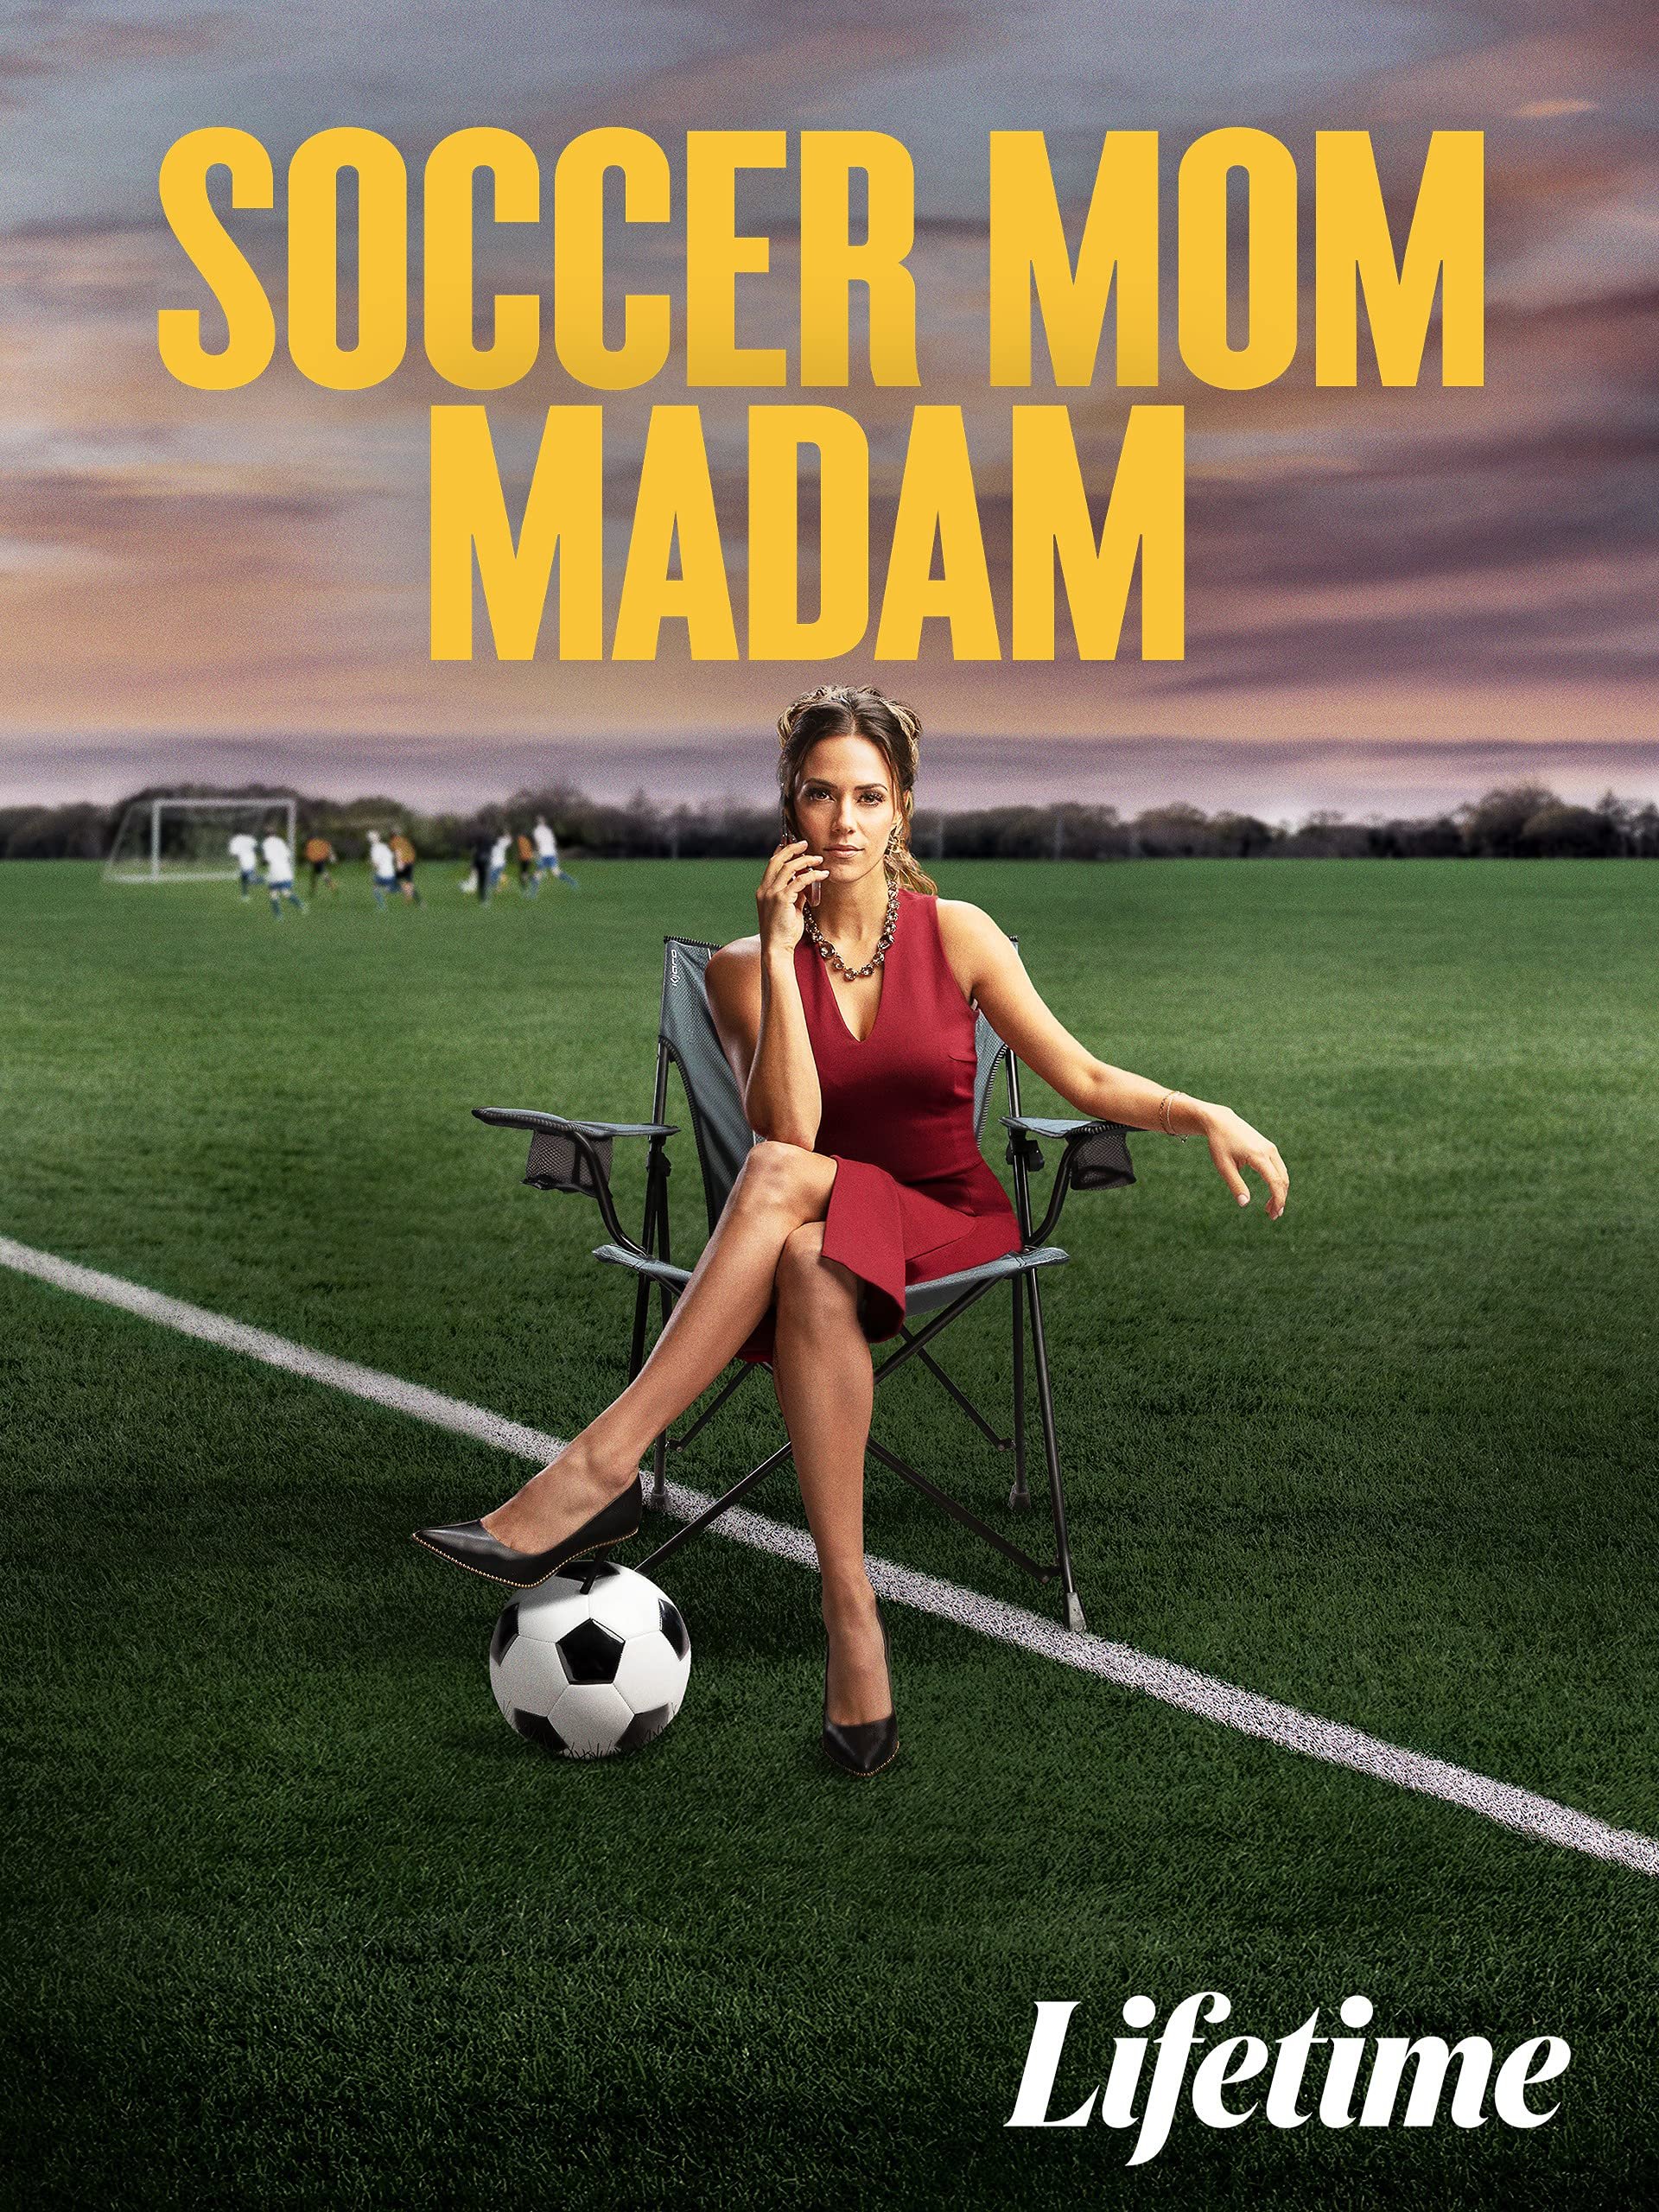 Soccer Mom Madam.jpg